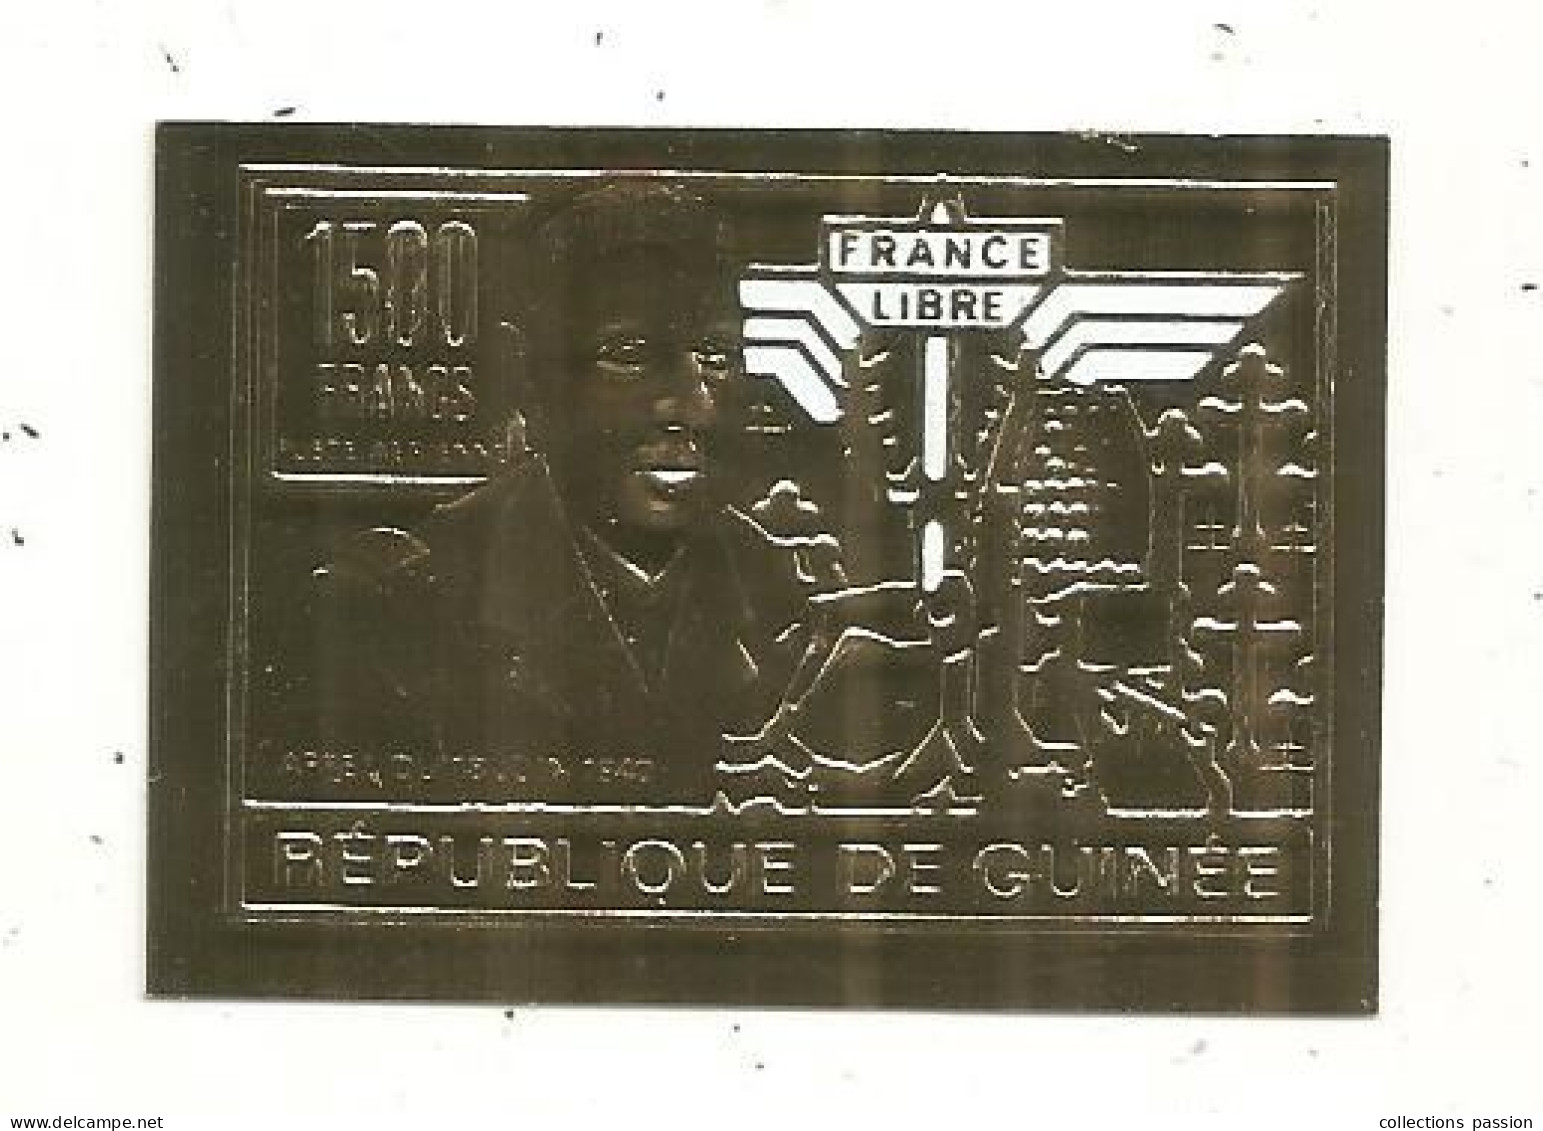 Timbre , GUINEE,1500 Francs , FRANCE LIBRE , Appel Du 18 Juin 1940, Général DE GAULLE - Guinee (1958-...)